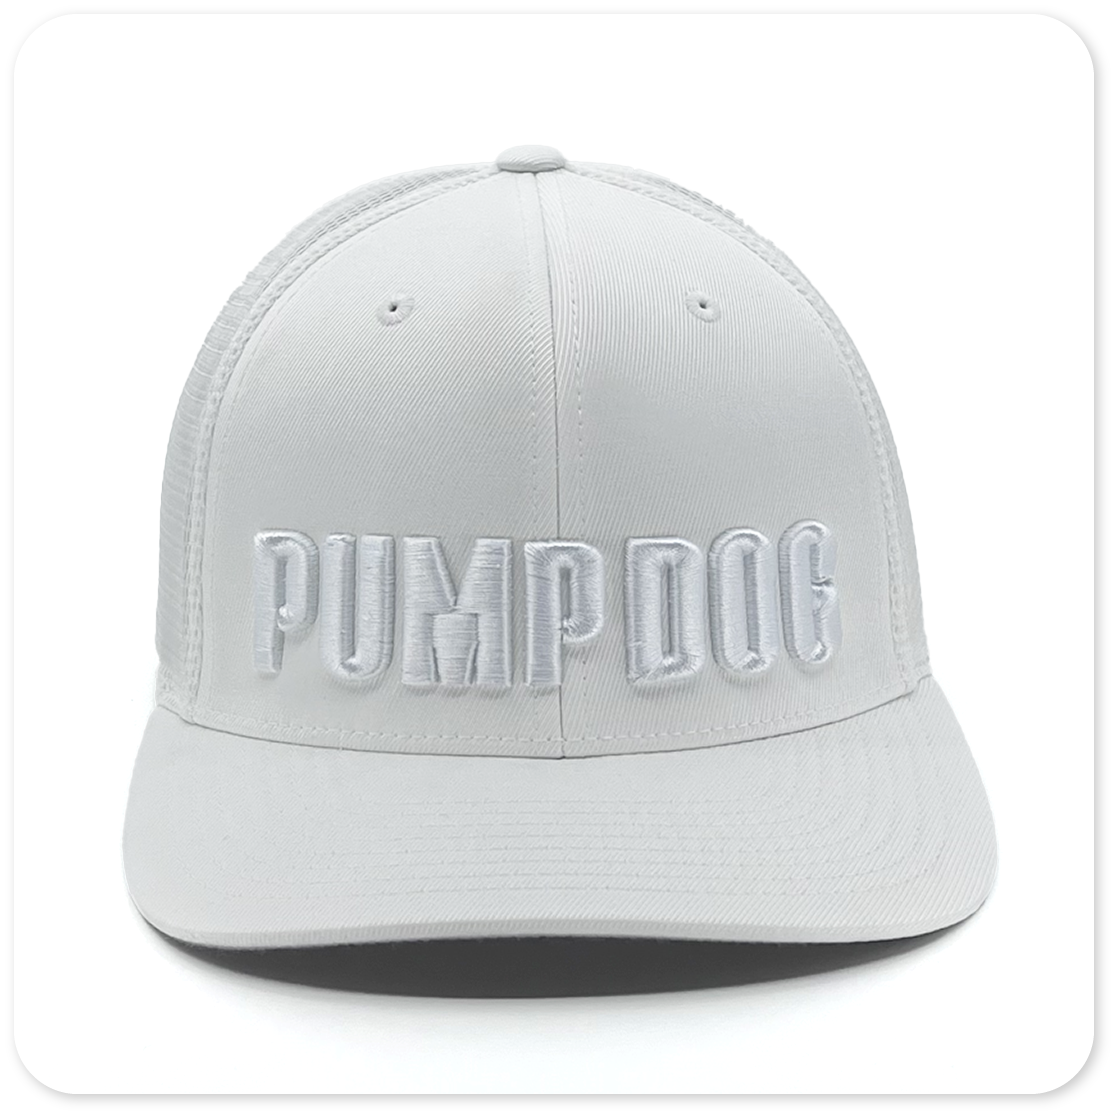 Icy Vanilla Pump Trucker – All-White Dog